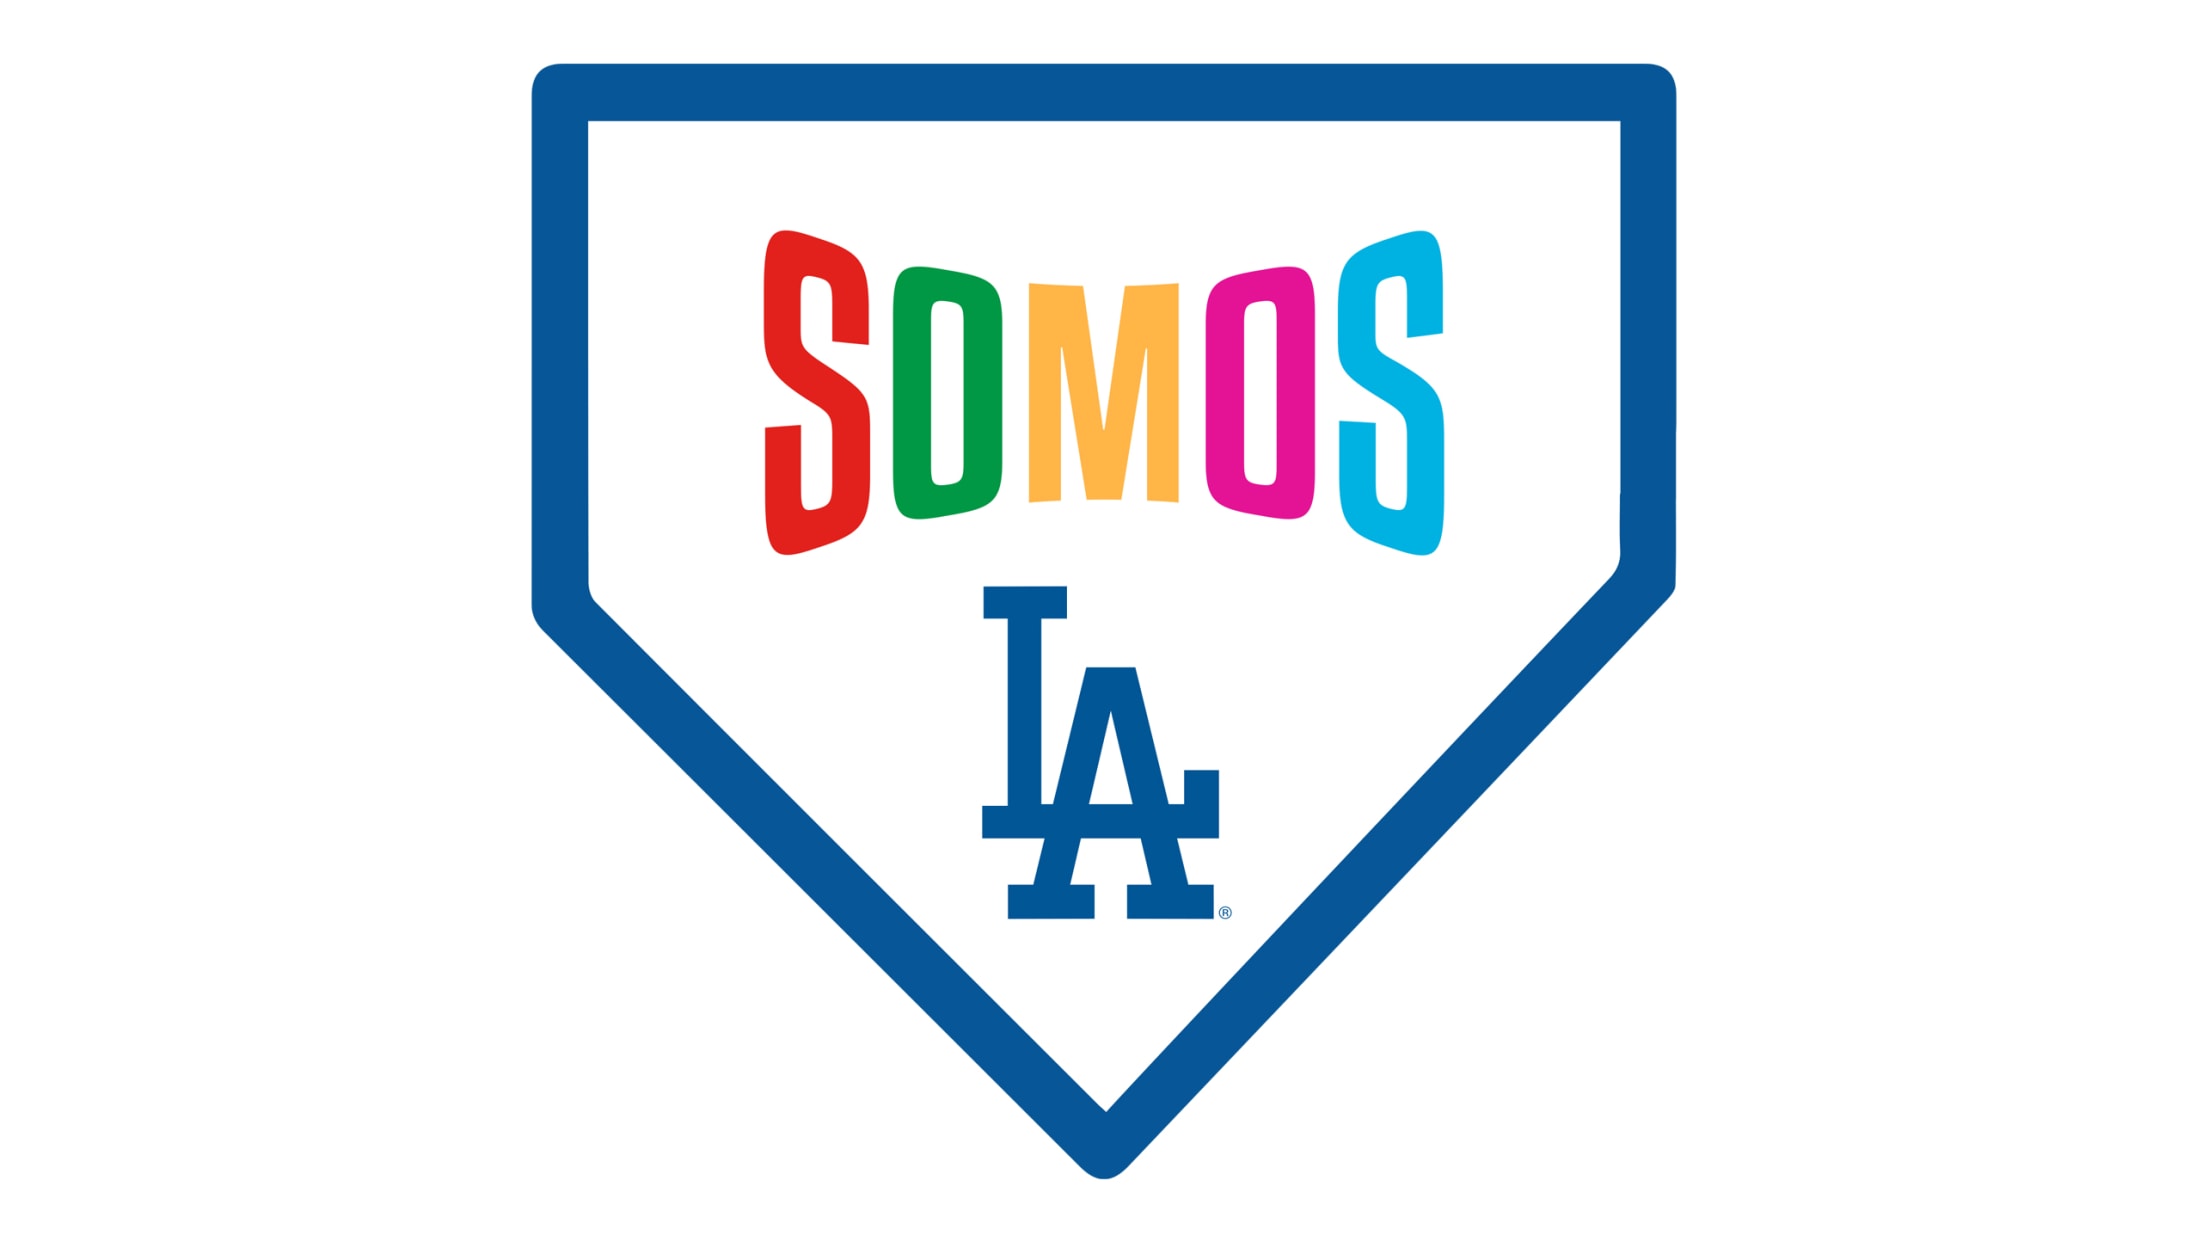 We are Los Angeles, somos Los Dodgers. - Los Angeles Dodgers